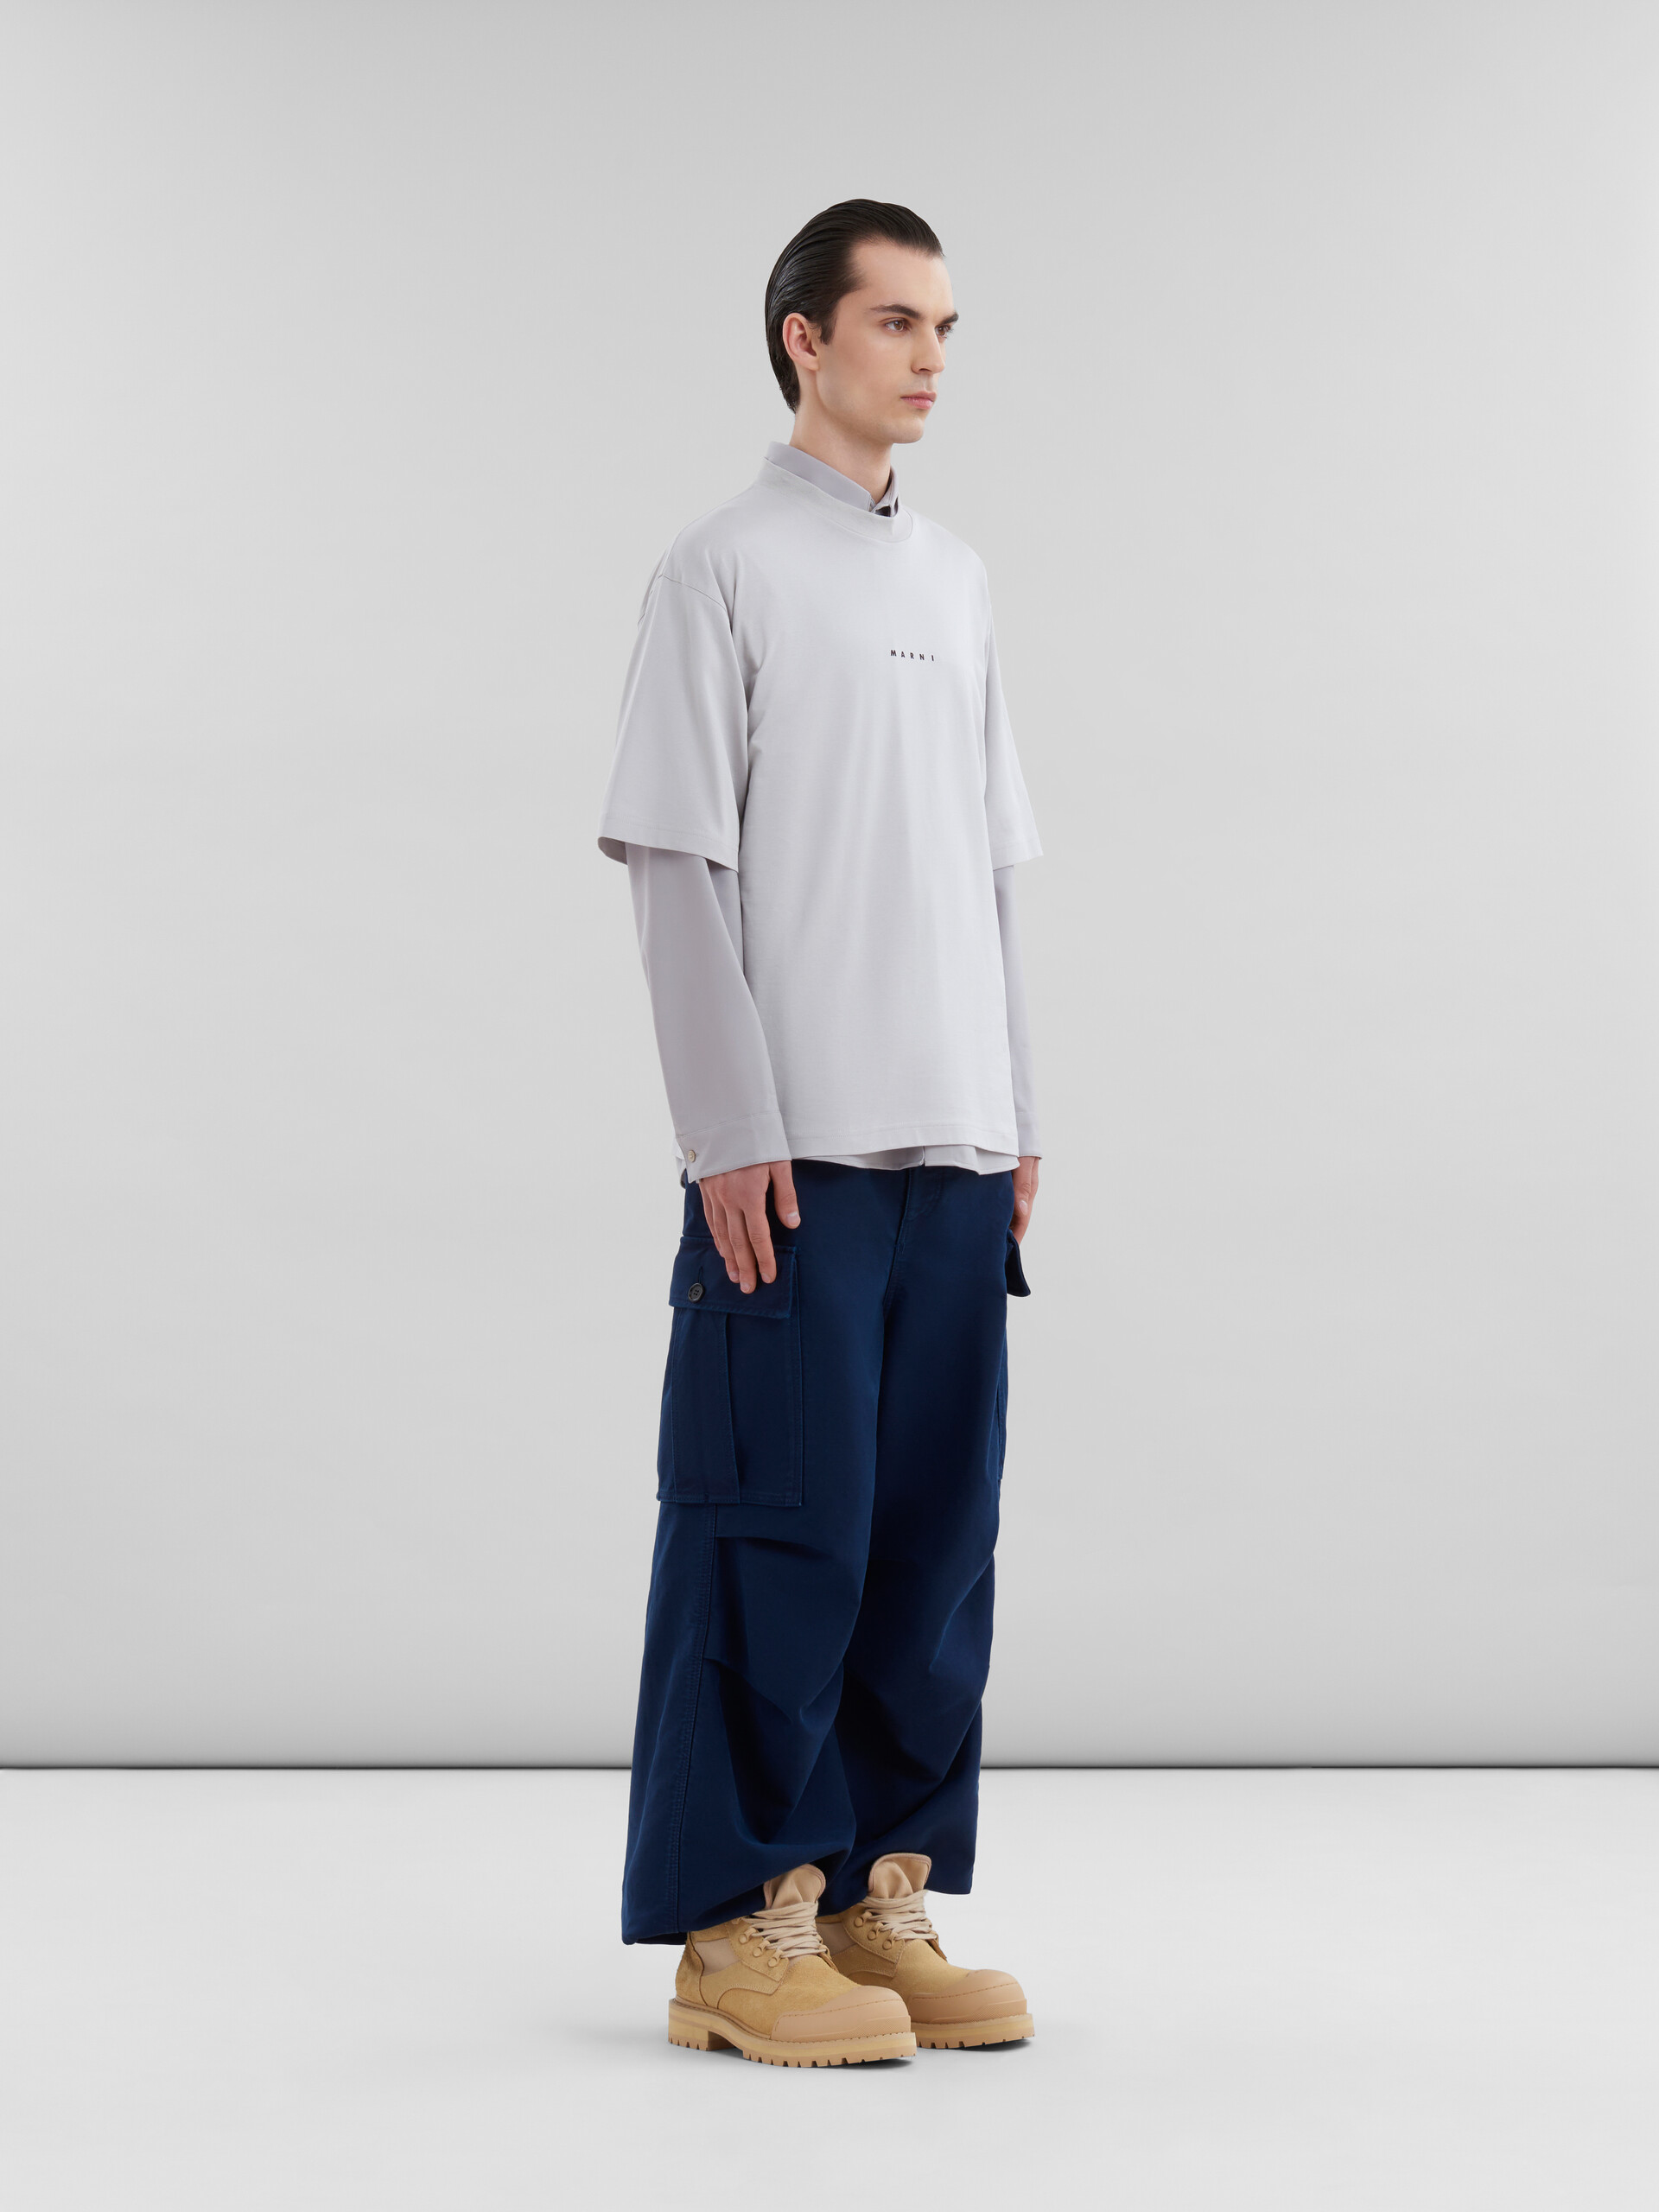 Camisa de lana tropical azul intenso con manga larga - Camisas - Image 5